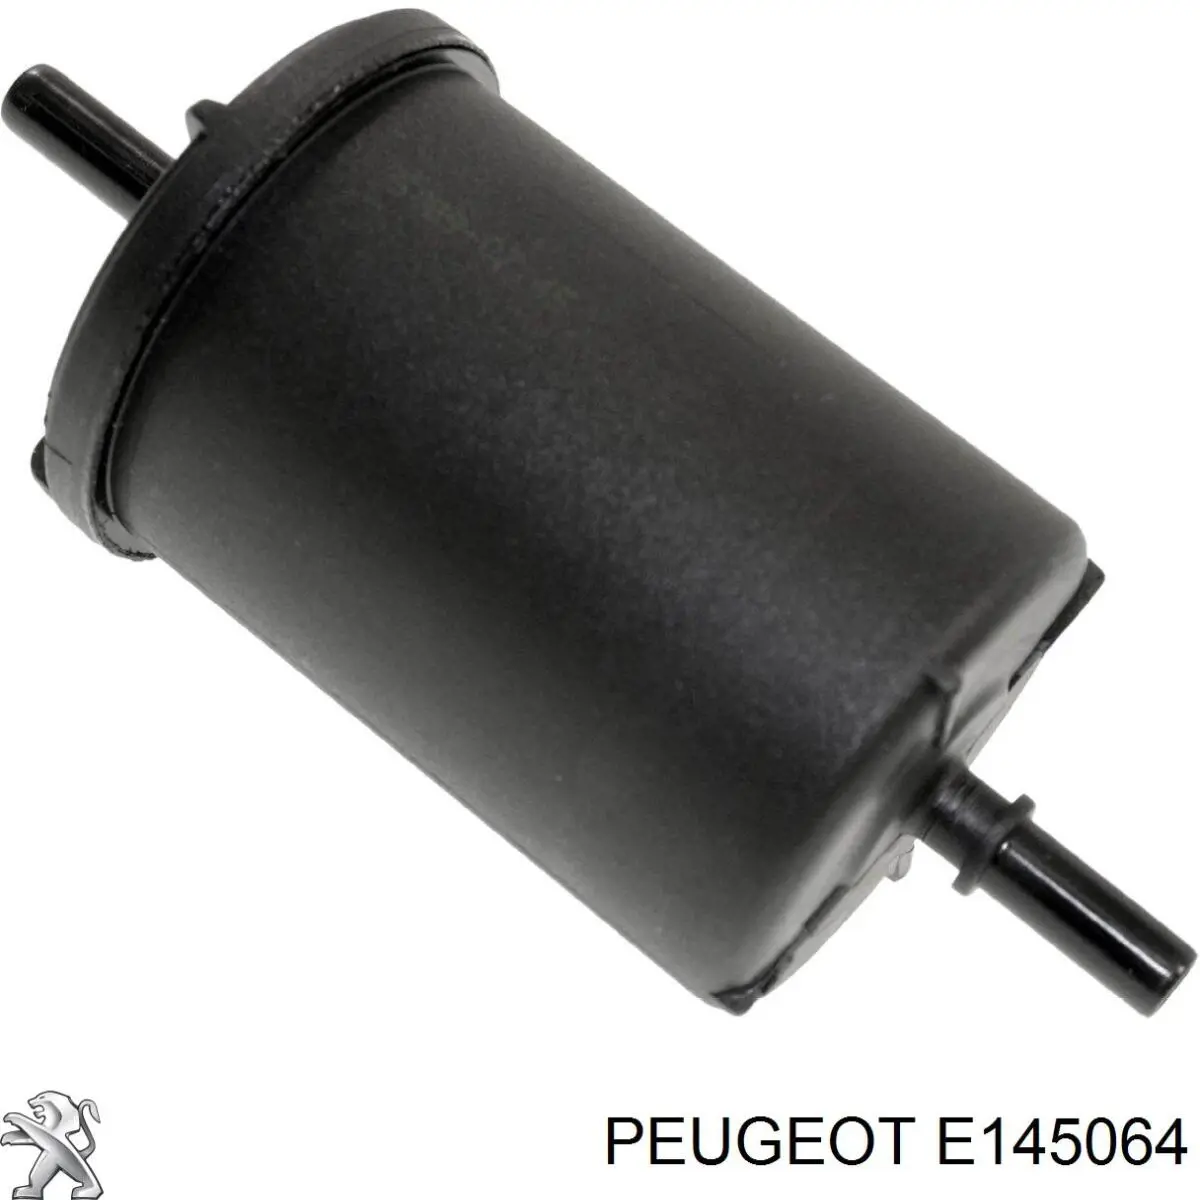 E145064 Peugeot/Citroen filtro combustible